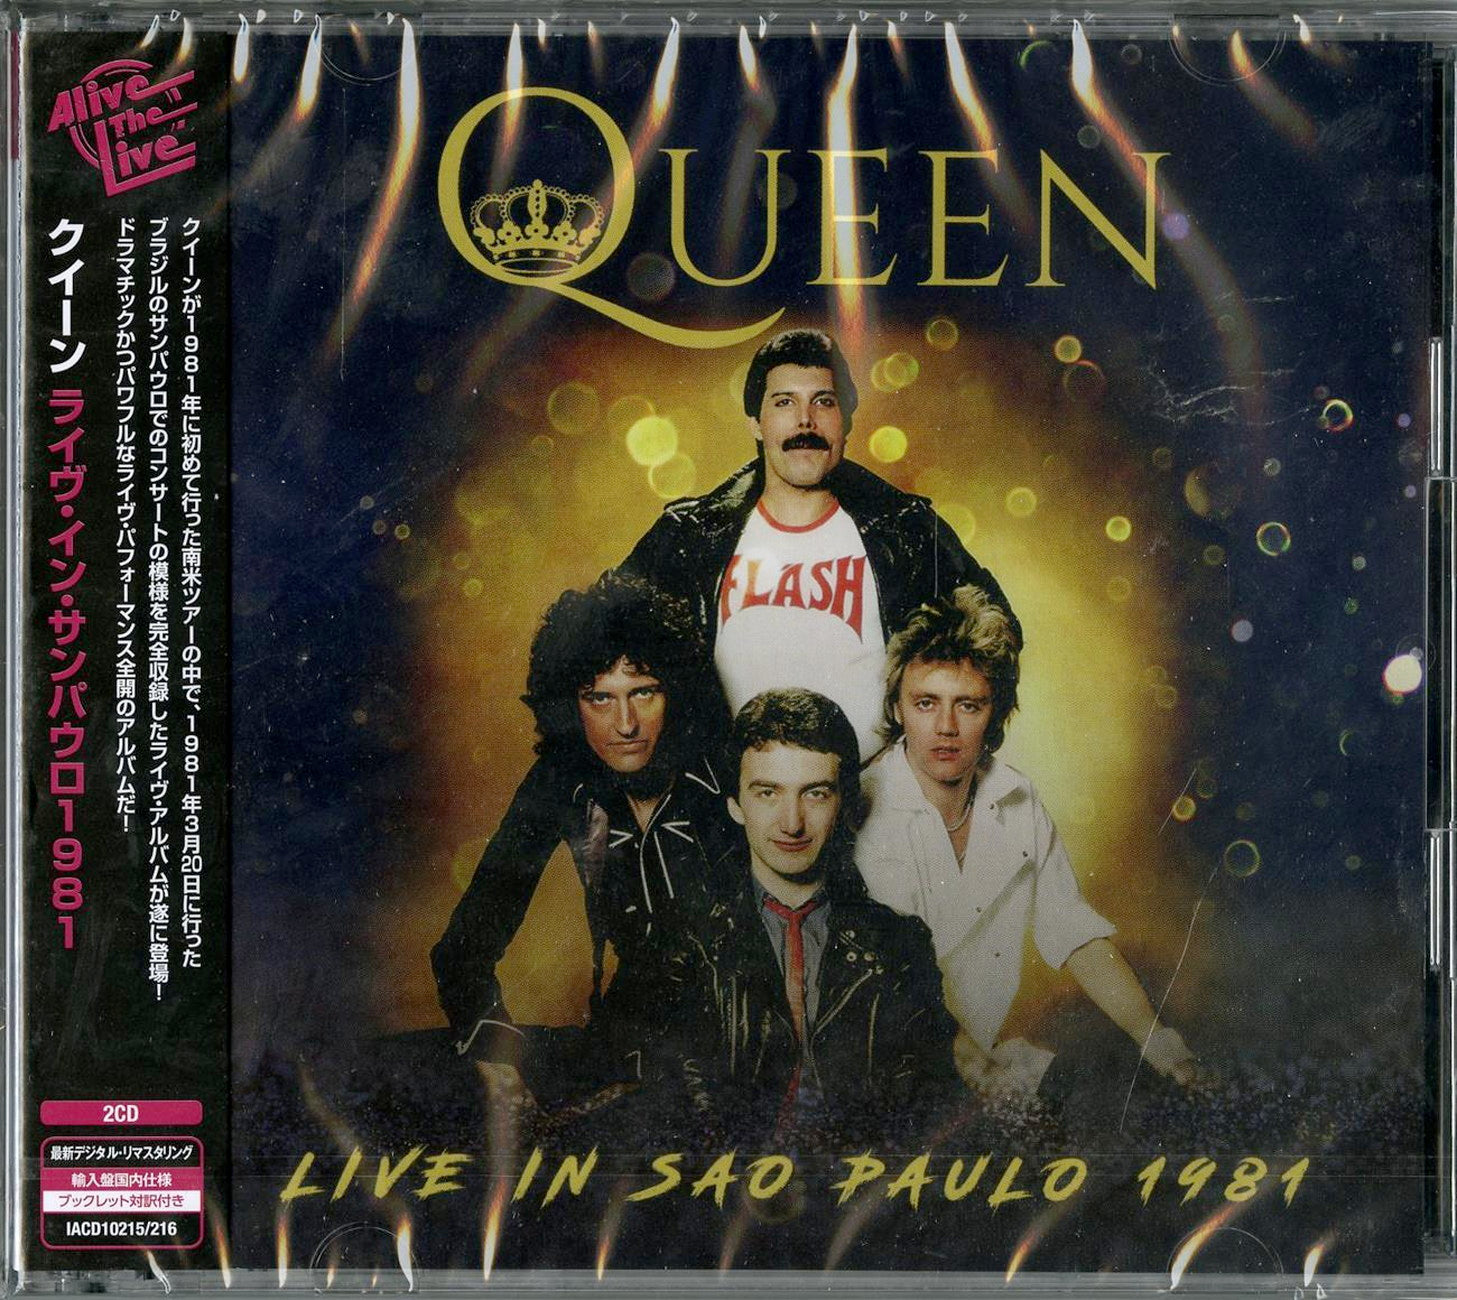 Queen - Live In Sao Paulo 1981 - Import 2 CD – CDs Vinyl Japan Store 2019